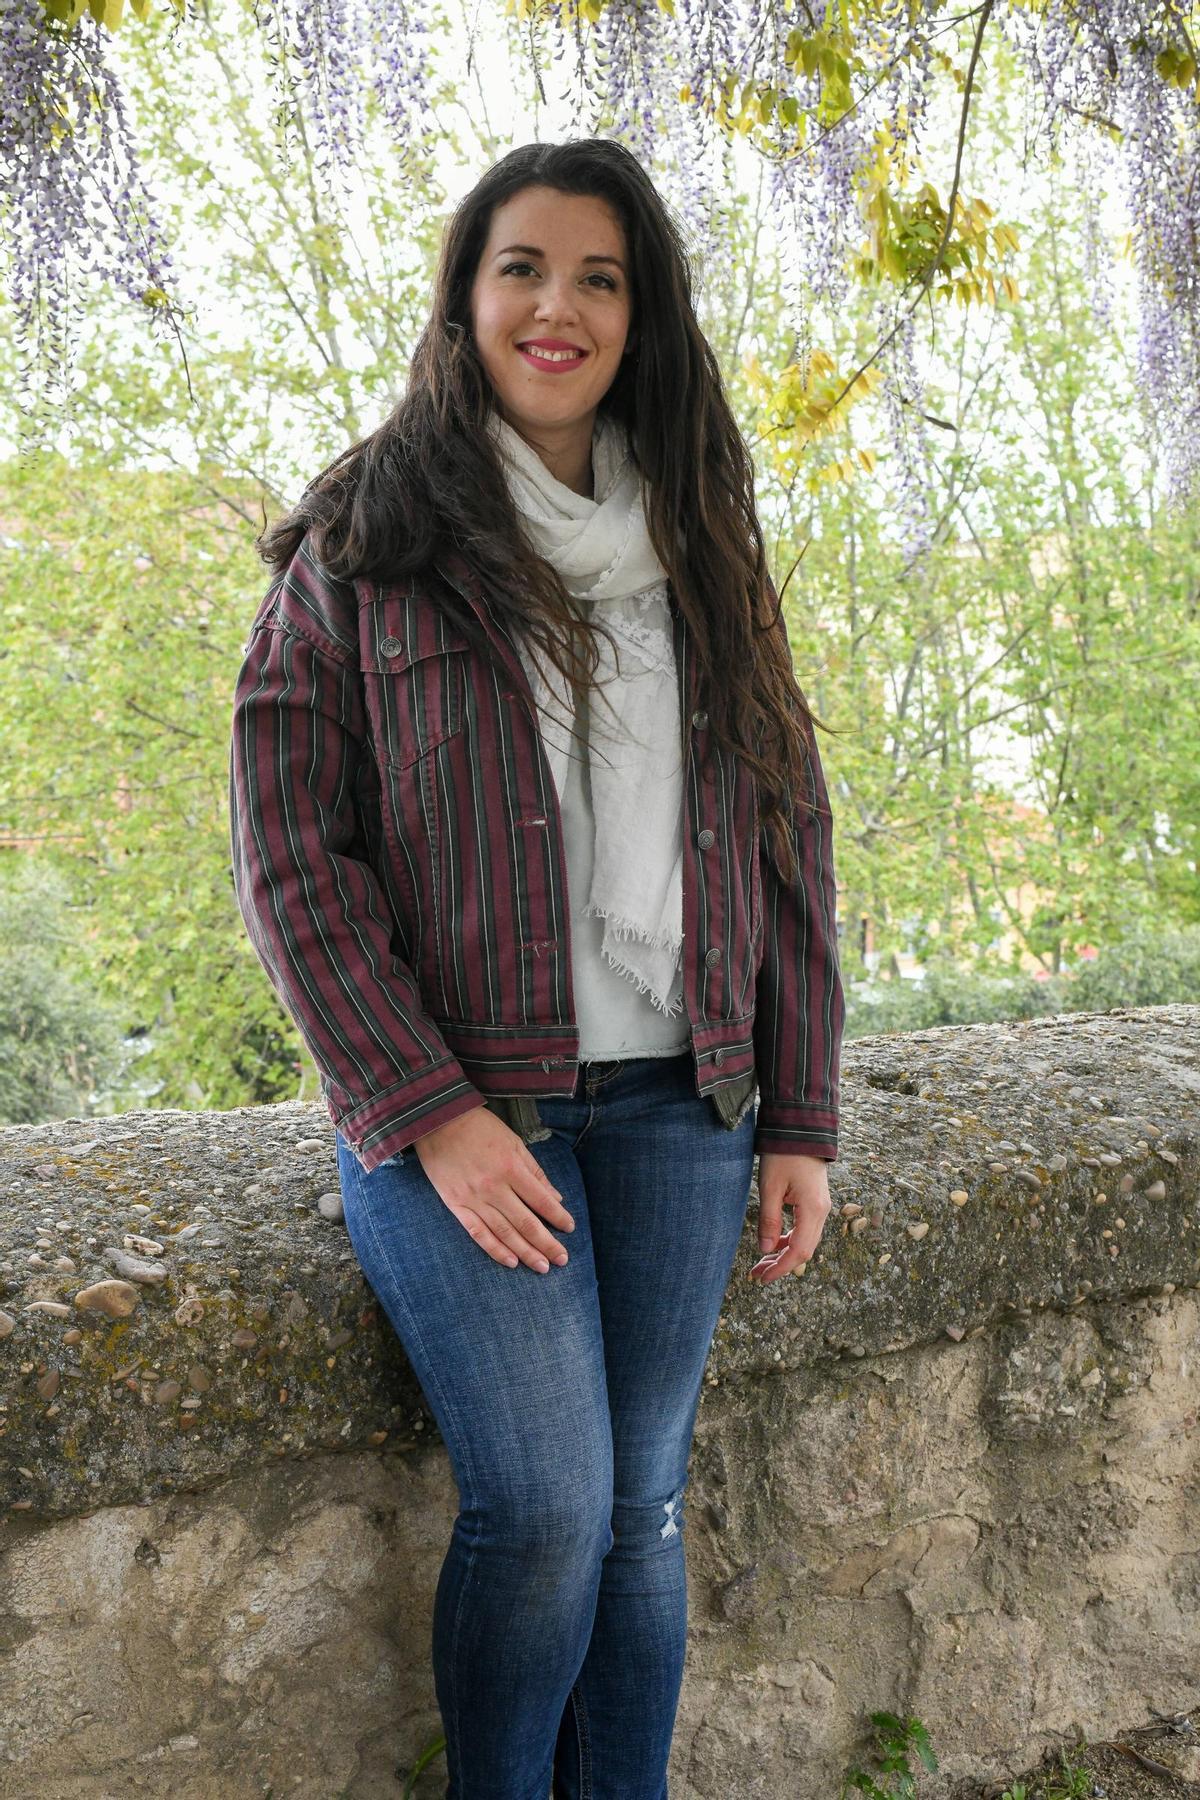 Claudia Zurdo Seijas